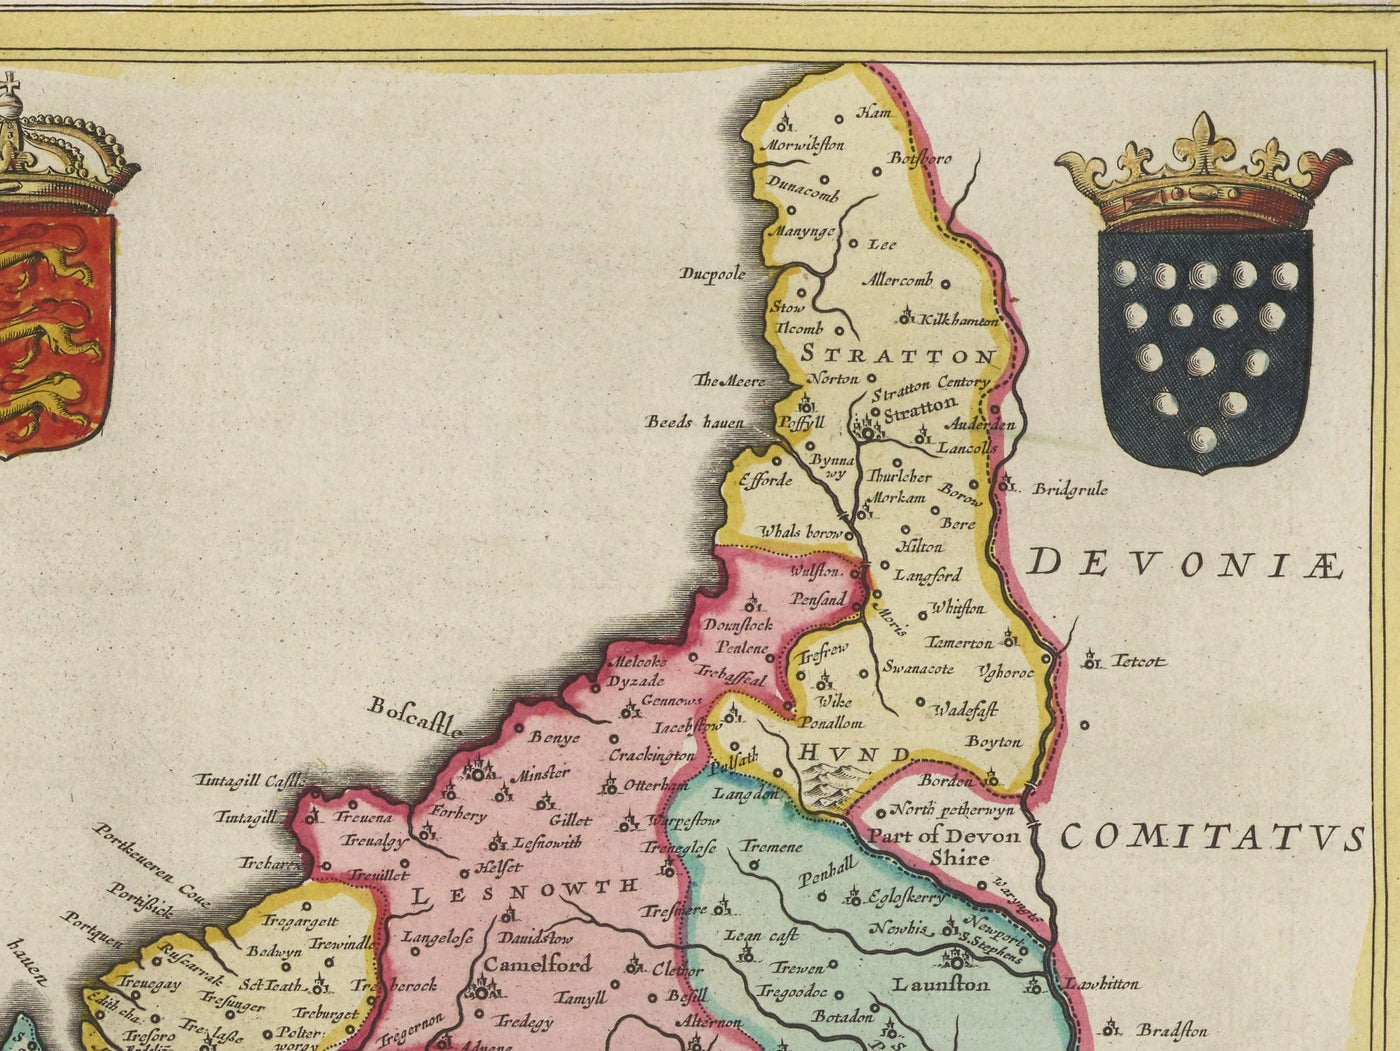 Alte Karte von Cornwall im Jahre 1665 von Joan Blaeu - Penzance, St. Ives, Falmouth, Landsende, Padstow, Redruth, Westland